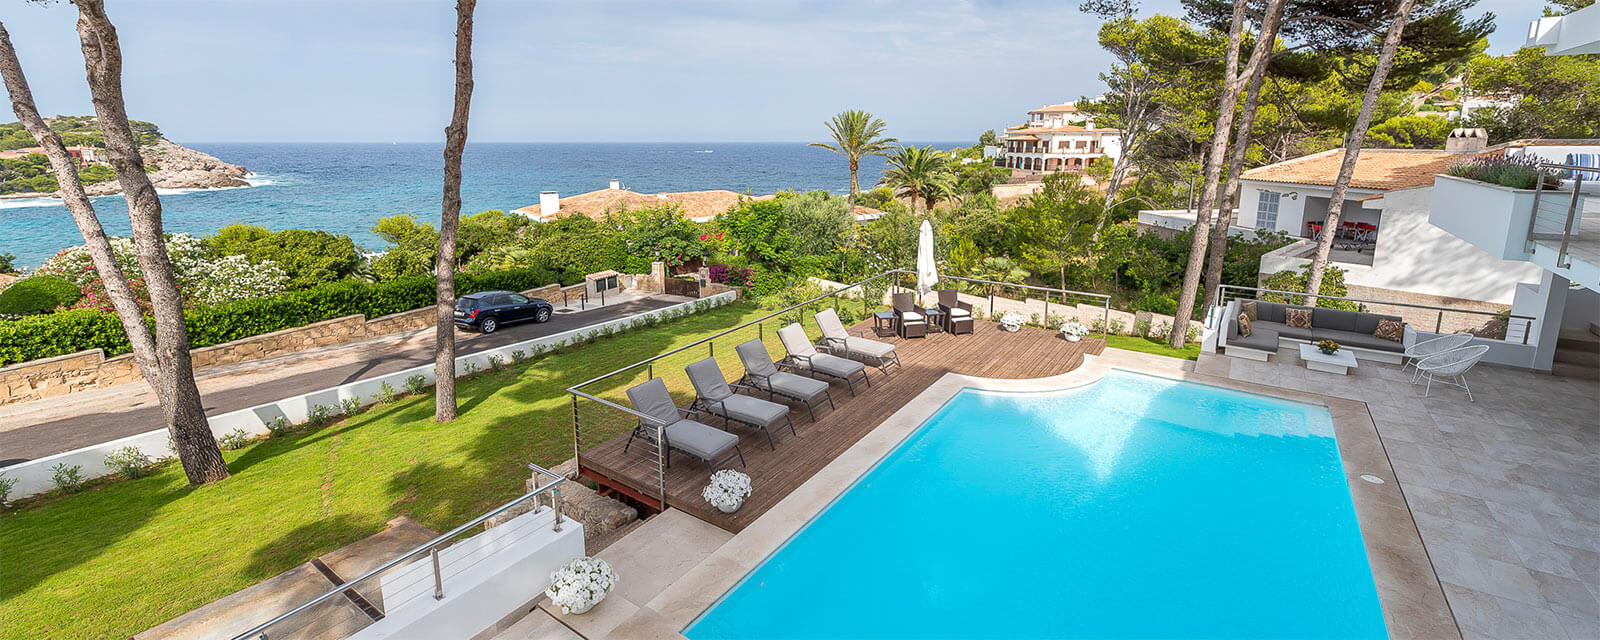 Exklusive Luxusvilla Mallorca am Meer mieten